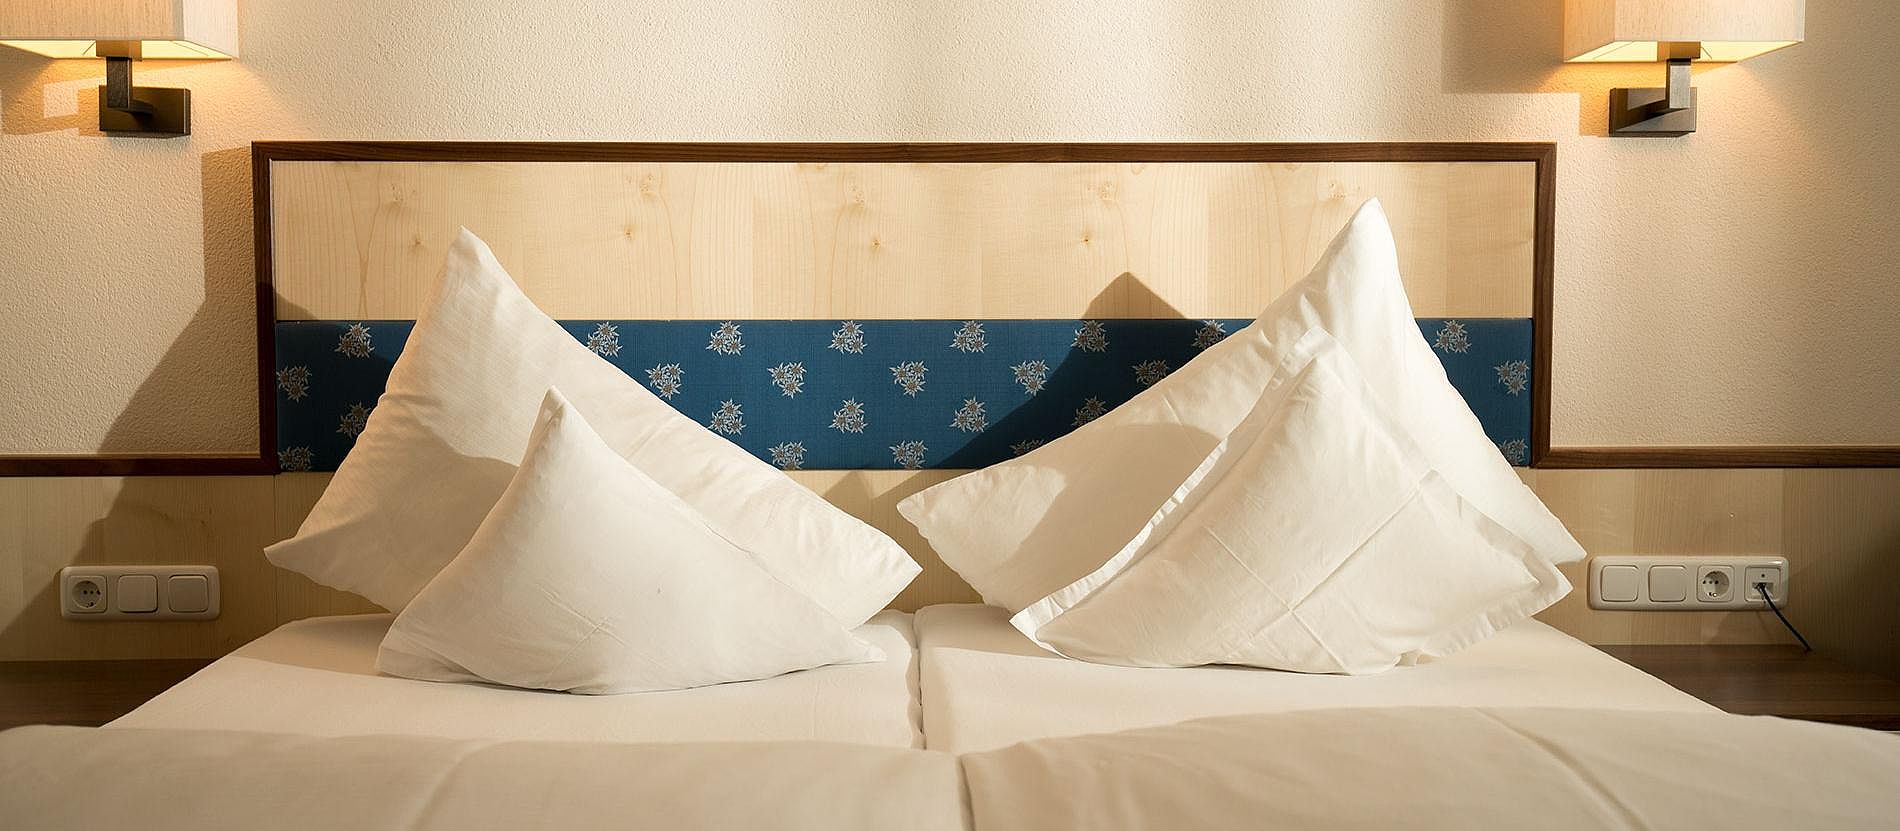 Hotel Ötztal - Foto eines Bettes - Kopfkissen aufgestellt